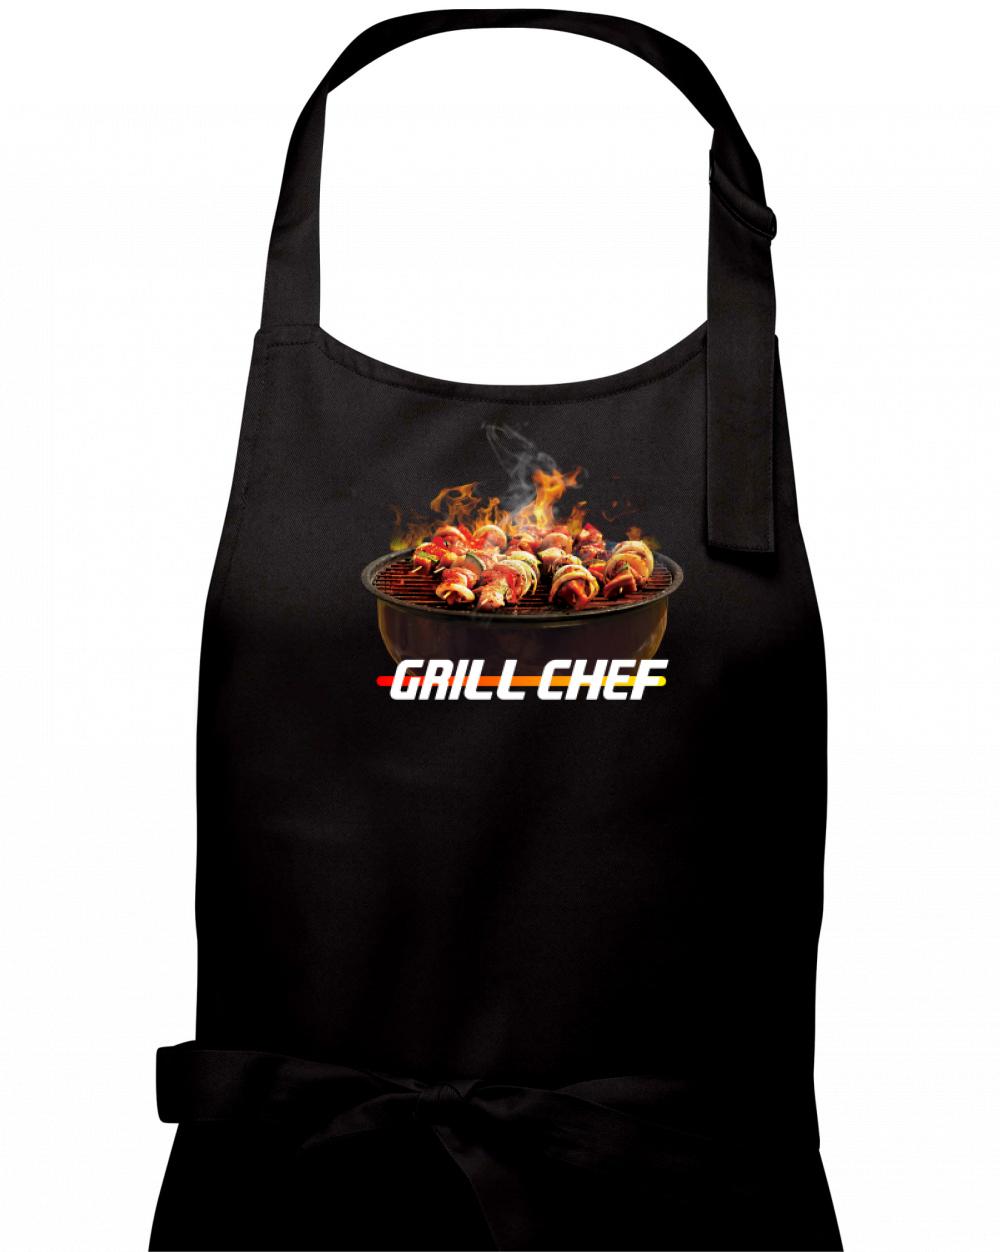 Grill chef - gril s ohněm - Zástěra na vaření